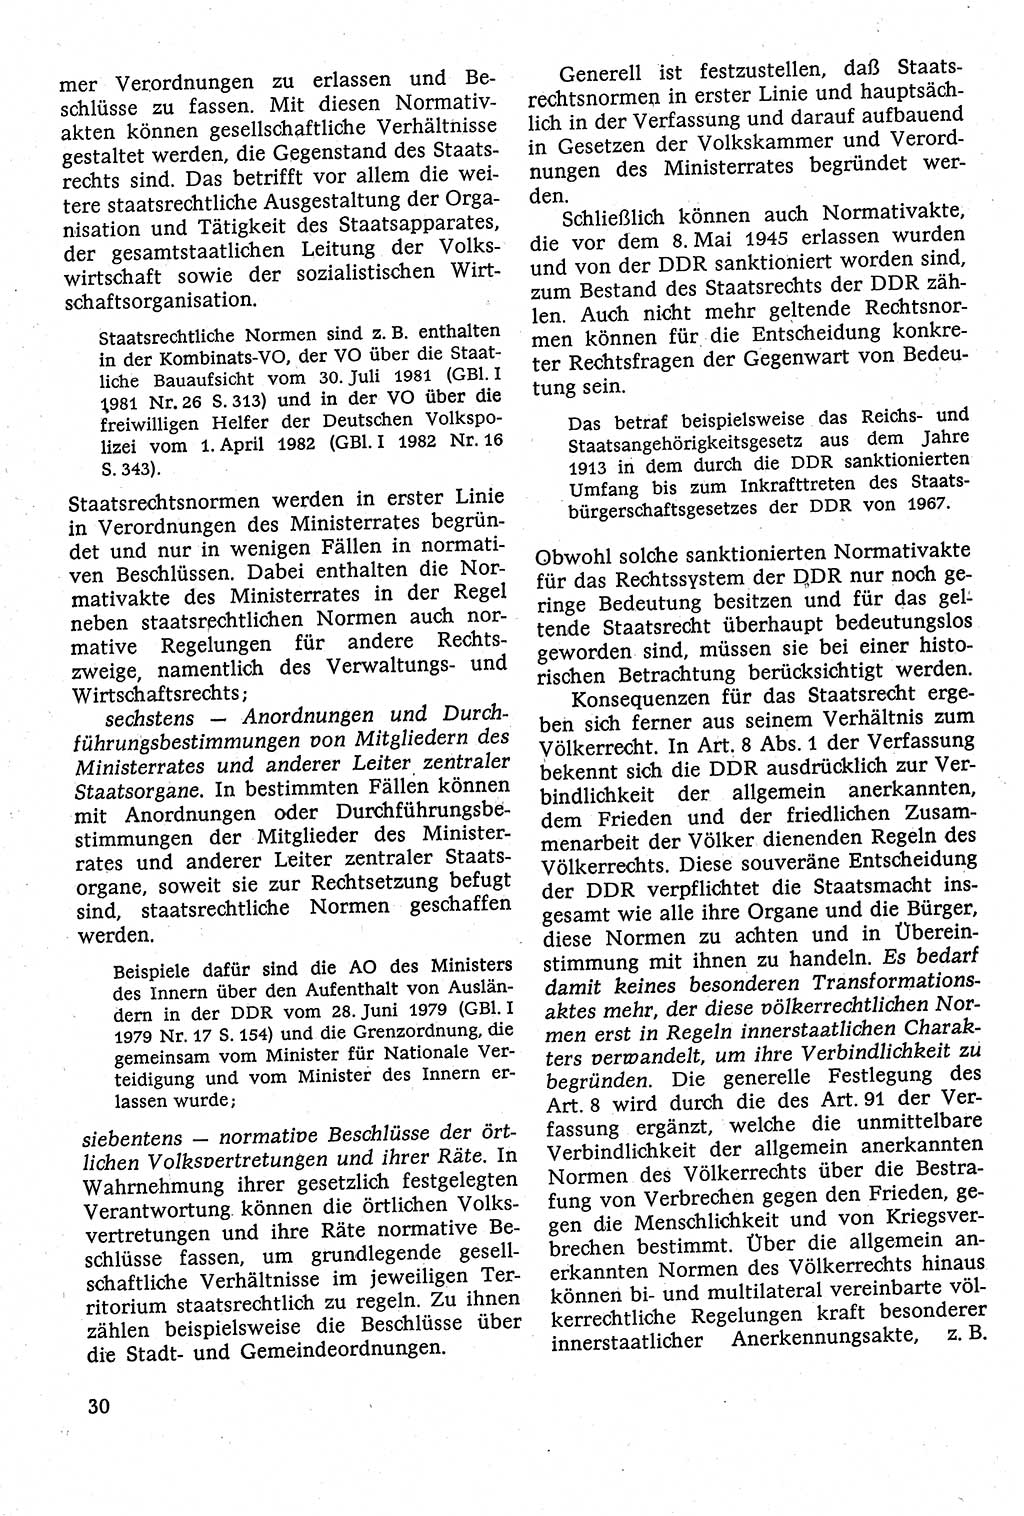 Staatsrecht der DDR [Deutsche Demokratische Republik (DDR)], Lehrbuch 1984, Seite 30 (St.-R. DDR Lb. 1984, S. 30)